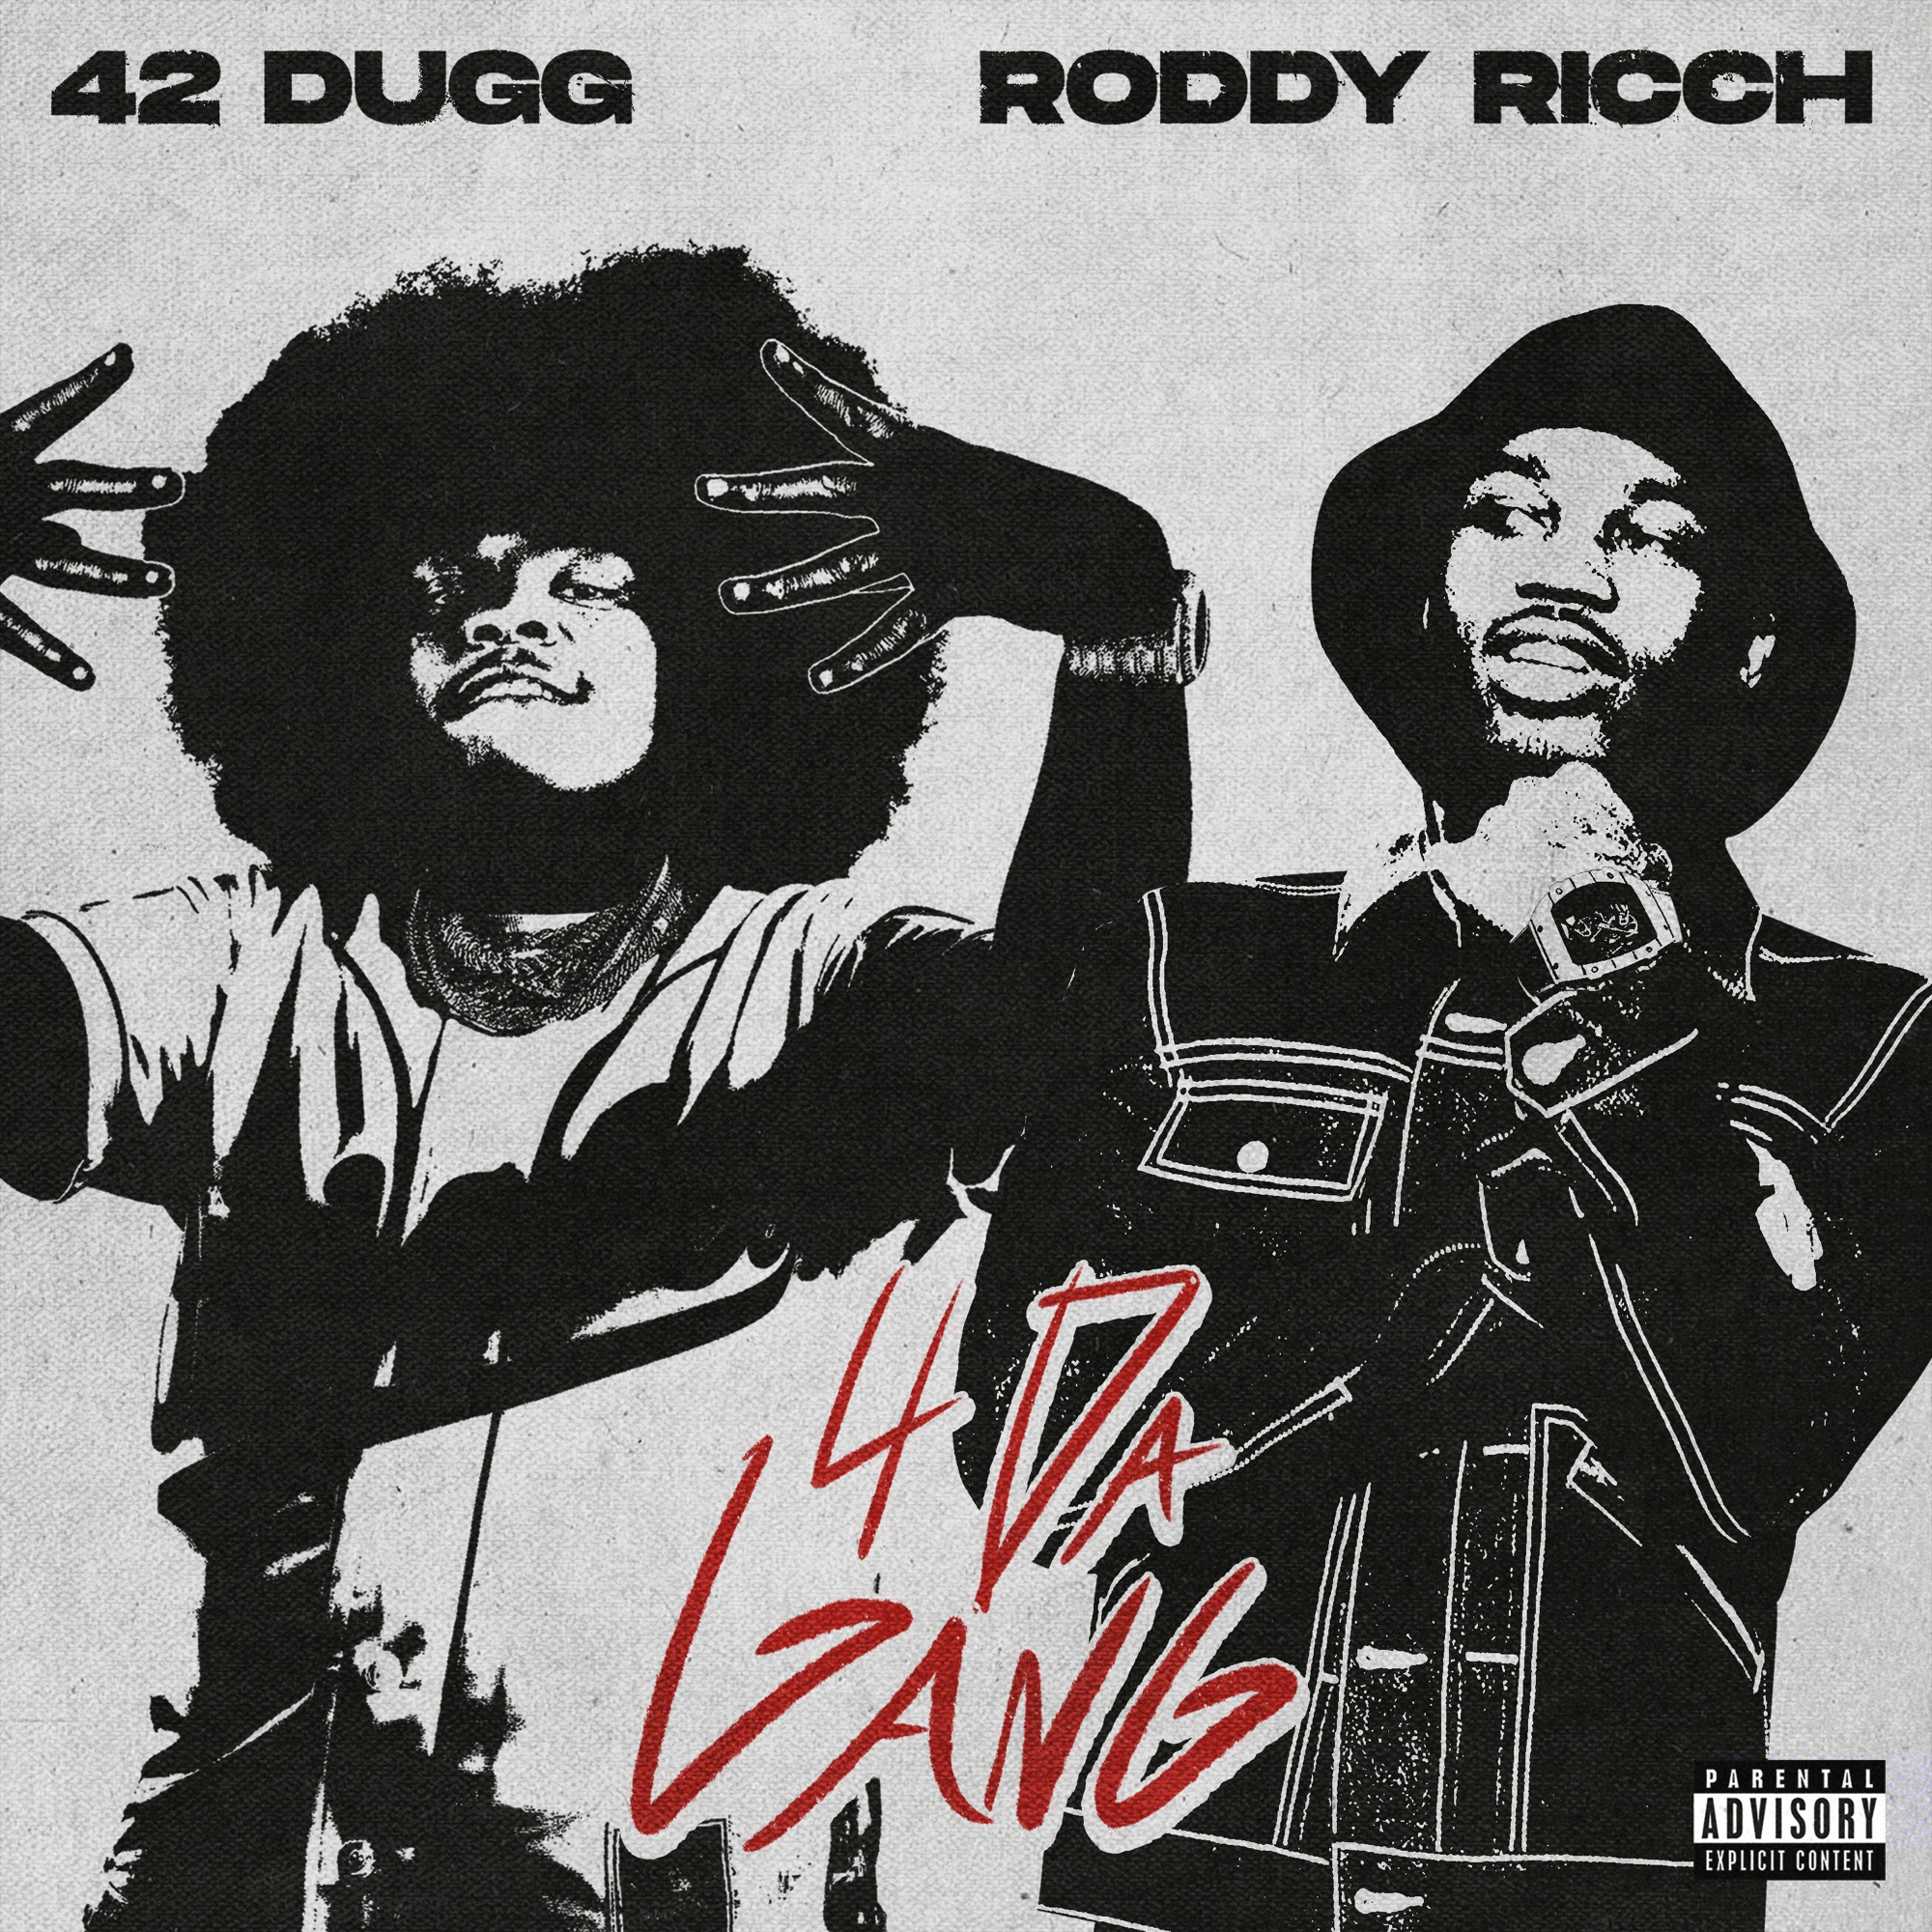 42 Dugg & Roddy Ricch - 4 Da Gang - Single